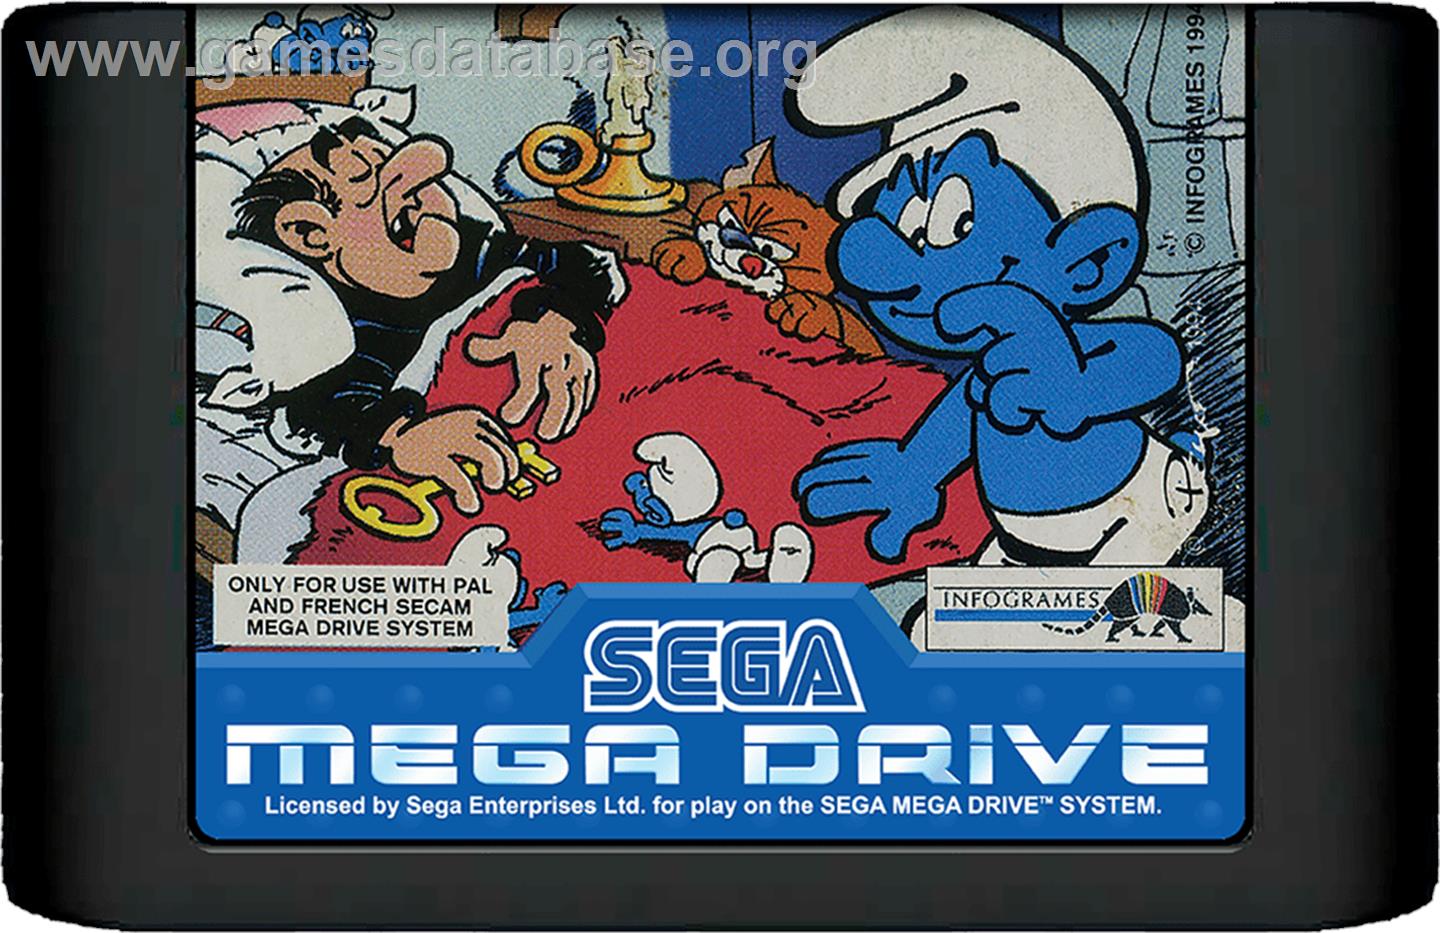 Smurfs, The - Sega Genesis - Artwork - Cartridge